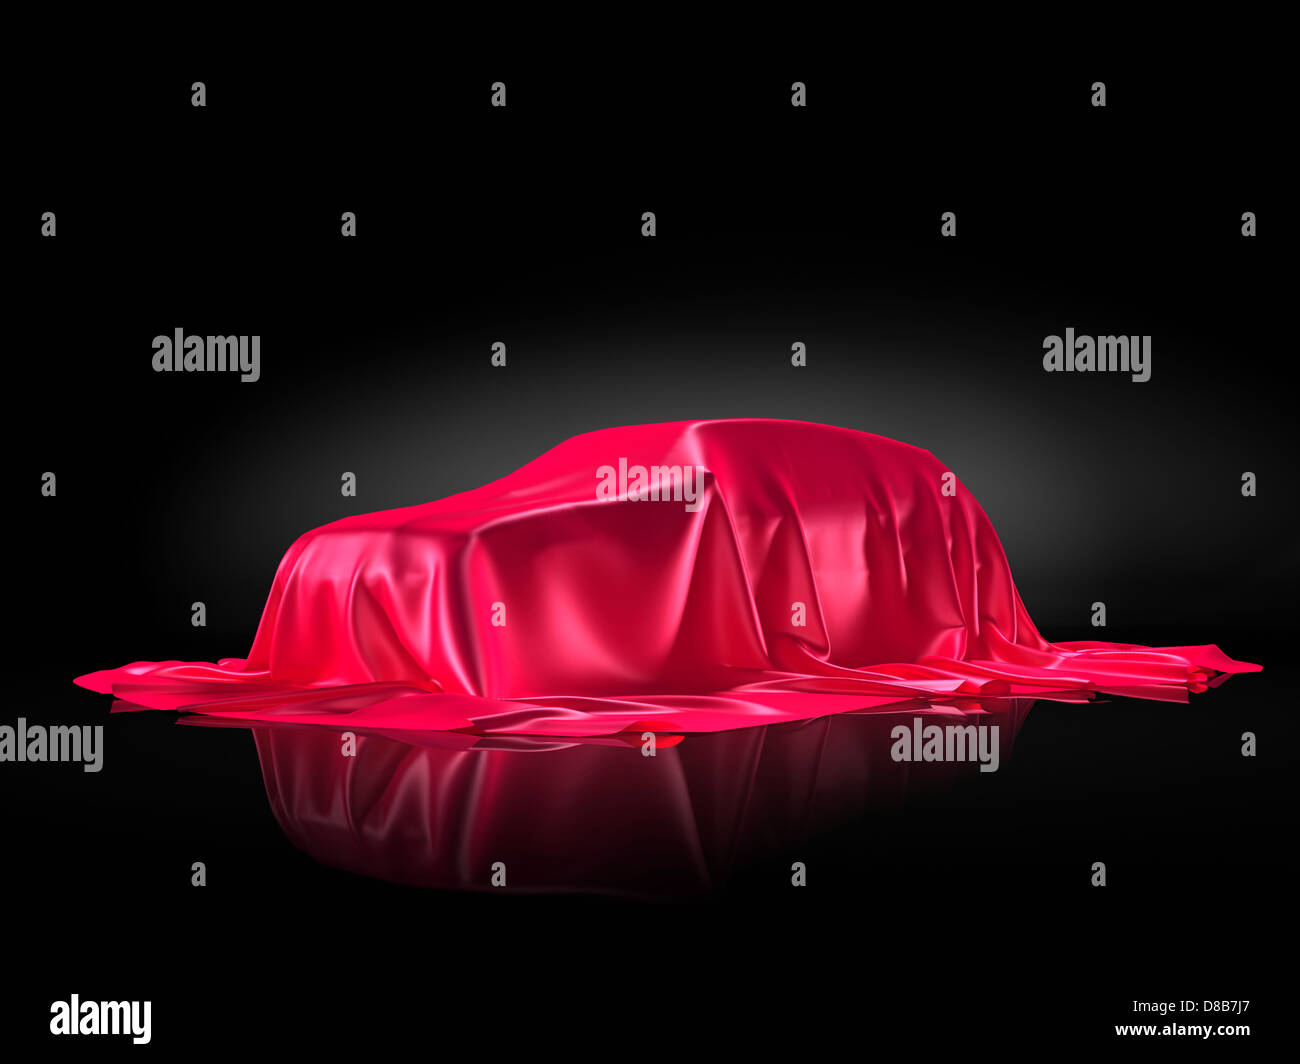 Nuevo modelo de coche en un soporte bajo red fabric presentación concepto aislado sobre fondo negro Foto de stock